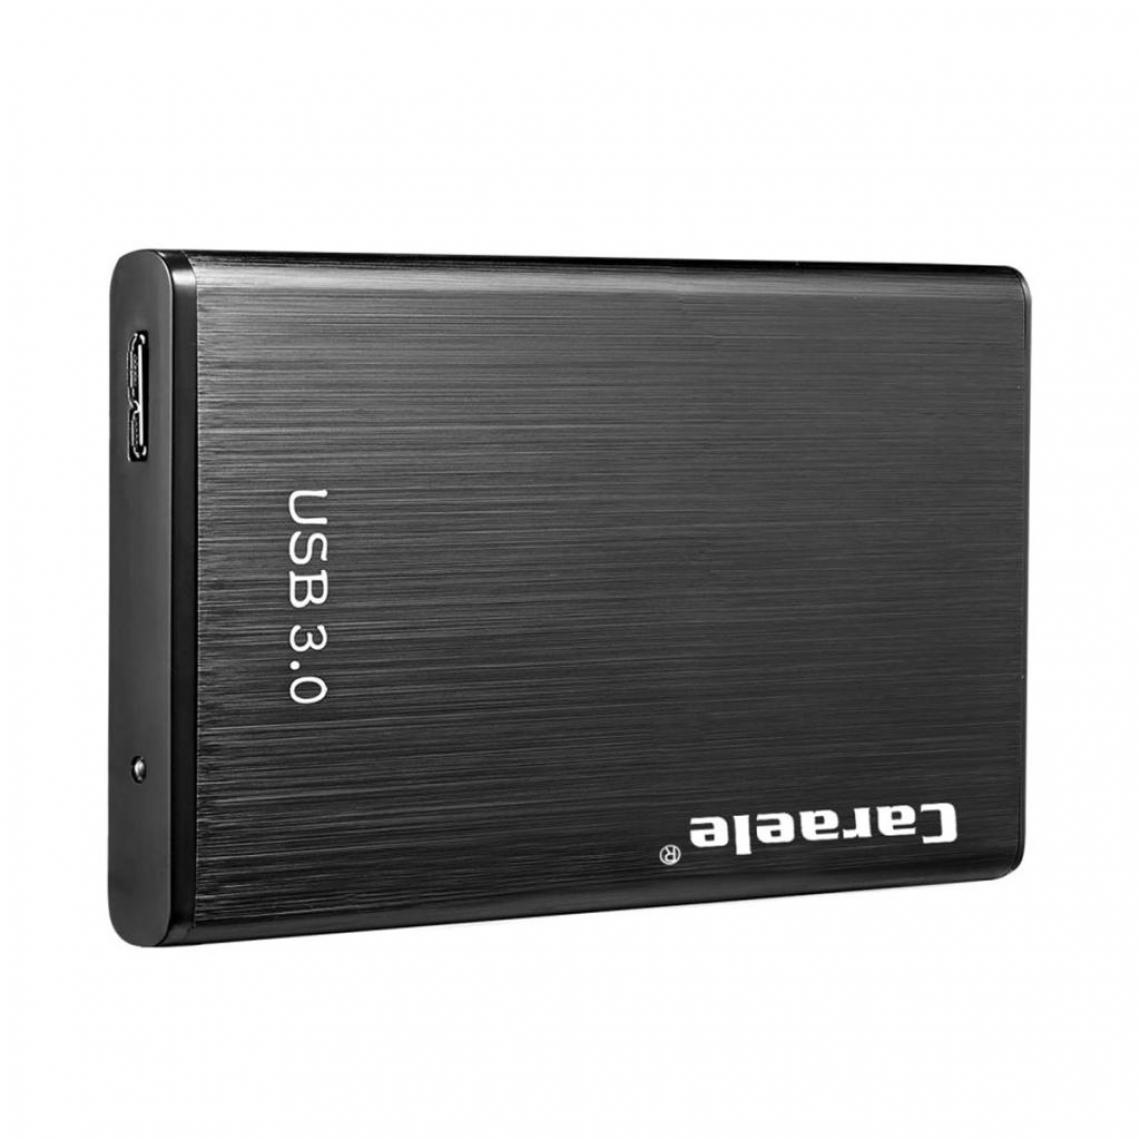 marque generique - Disque Dur Mobile USB 3.0 Haute Vitesse USB 3.0 Vers SATA III 500 Go - Boitier PC